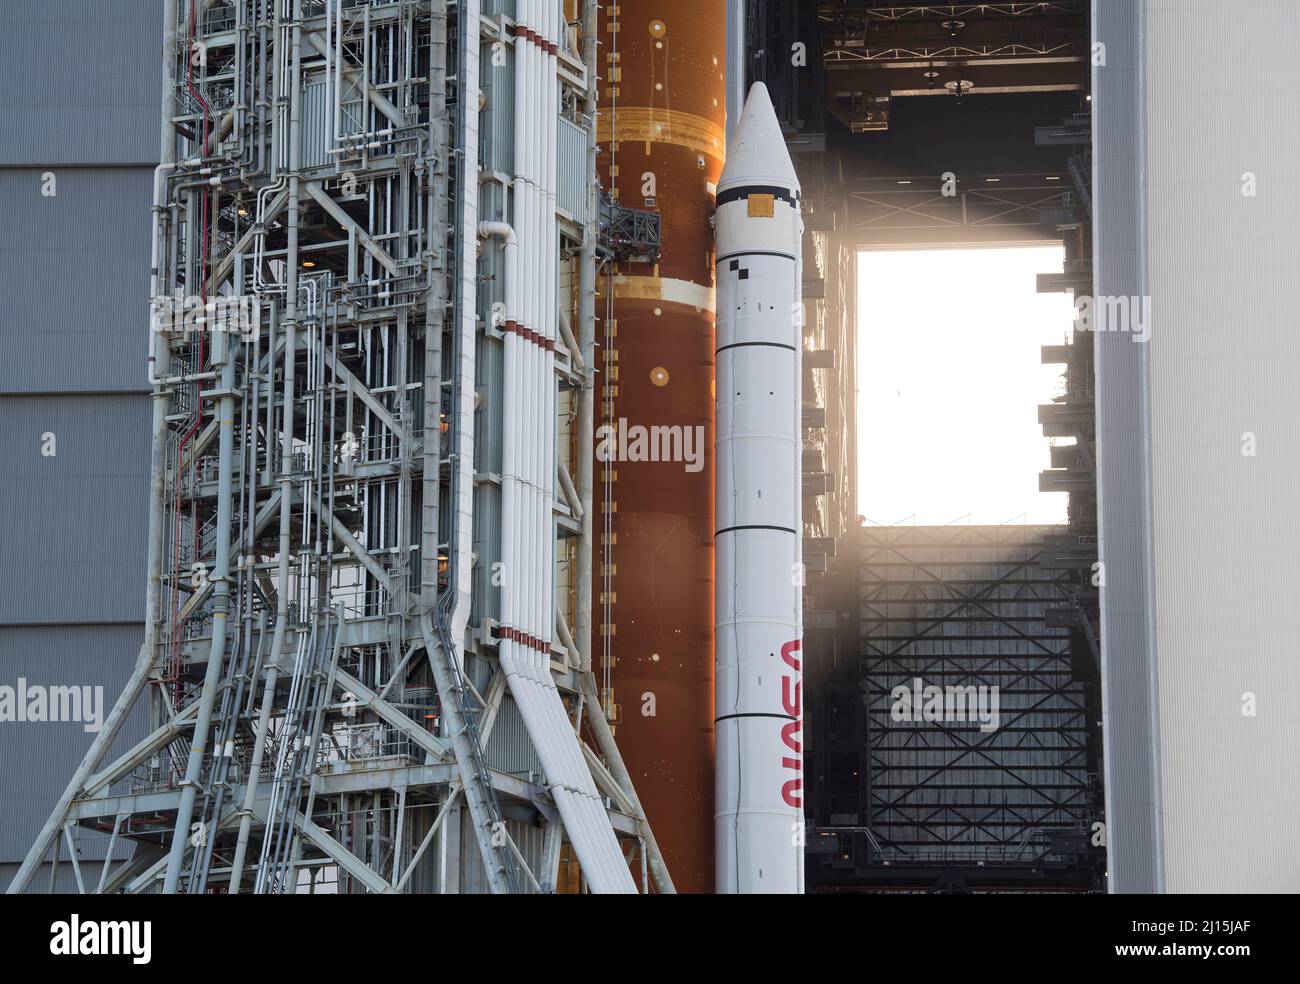 La fusée SLS (Space Launch System) de la NASA à bord de l'engin spatial Orion est vue au sommet d'un lanceur mobile alors qu'elle sort de High Bay 3 du bâtiment d'assemblage de véhicules pour la première fois pour lancer le complexe 39B, le jeudi 17 mars 2022, au Kennedy Space Center de la NASA en Floride. Avant l'essai en vol Artemis I de la NASA, la fusée SLS et l'engin spatial Orion entièrement empilés et intégrés feront l'objet d'une répétition en robe humide au Launch Complex 39B pour vérifier les systèmes et pratiquer les procédures de compte à rebours pour le premier lancement. Crédit photo : (NASA/Aubrey Gemignani) Banque D'Images